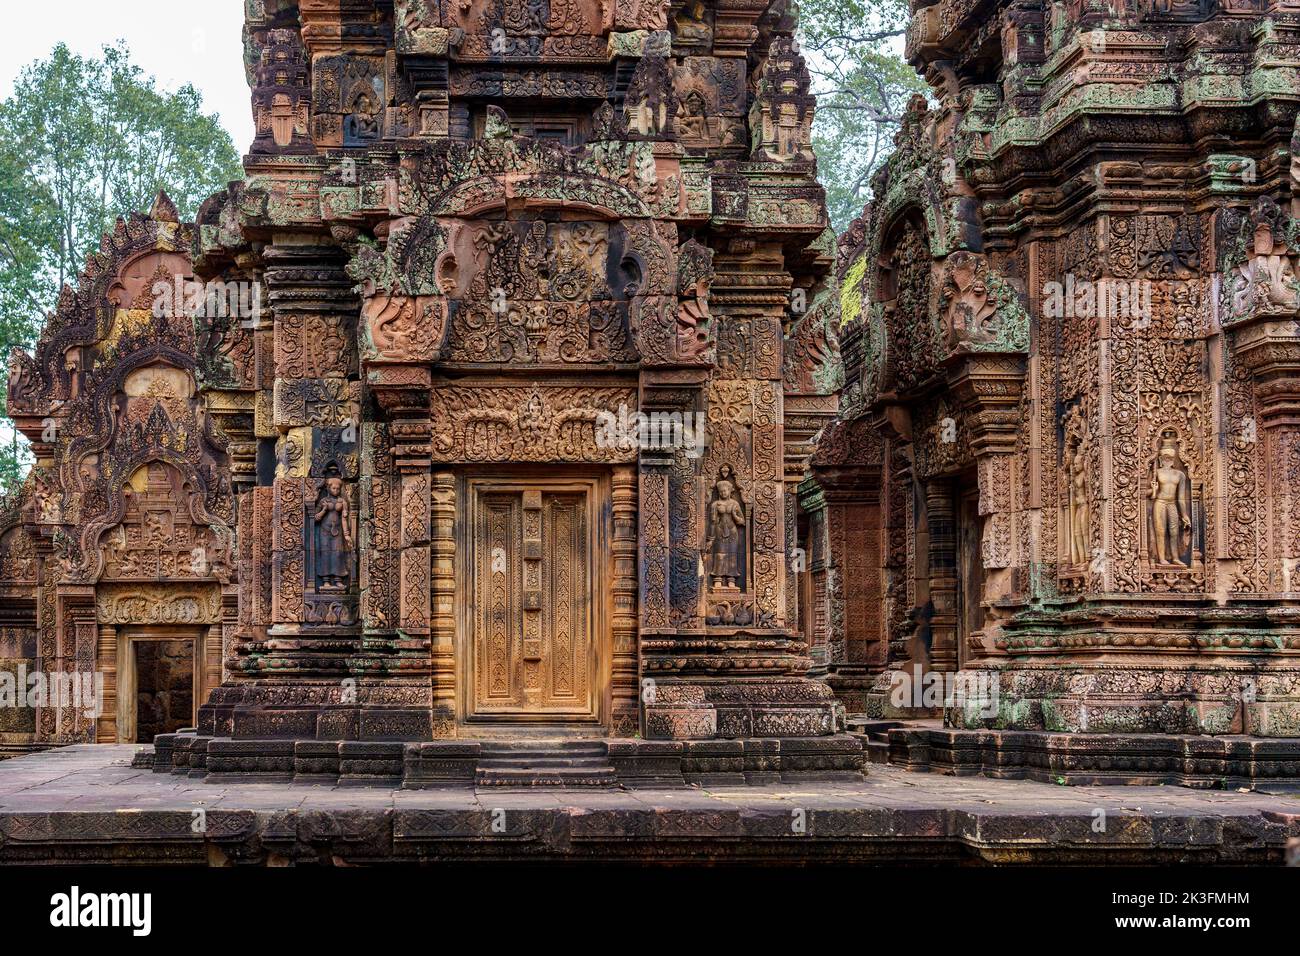 Cambodge. Siem Reap. Le parc archéologique d'Angkor. Temple de Banteay Srei temple hindou de 10th siècles dédié à Shiva. Détail de l'architecture Banque D'Images